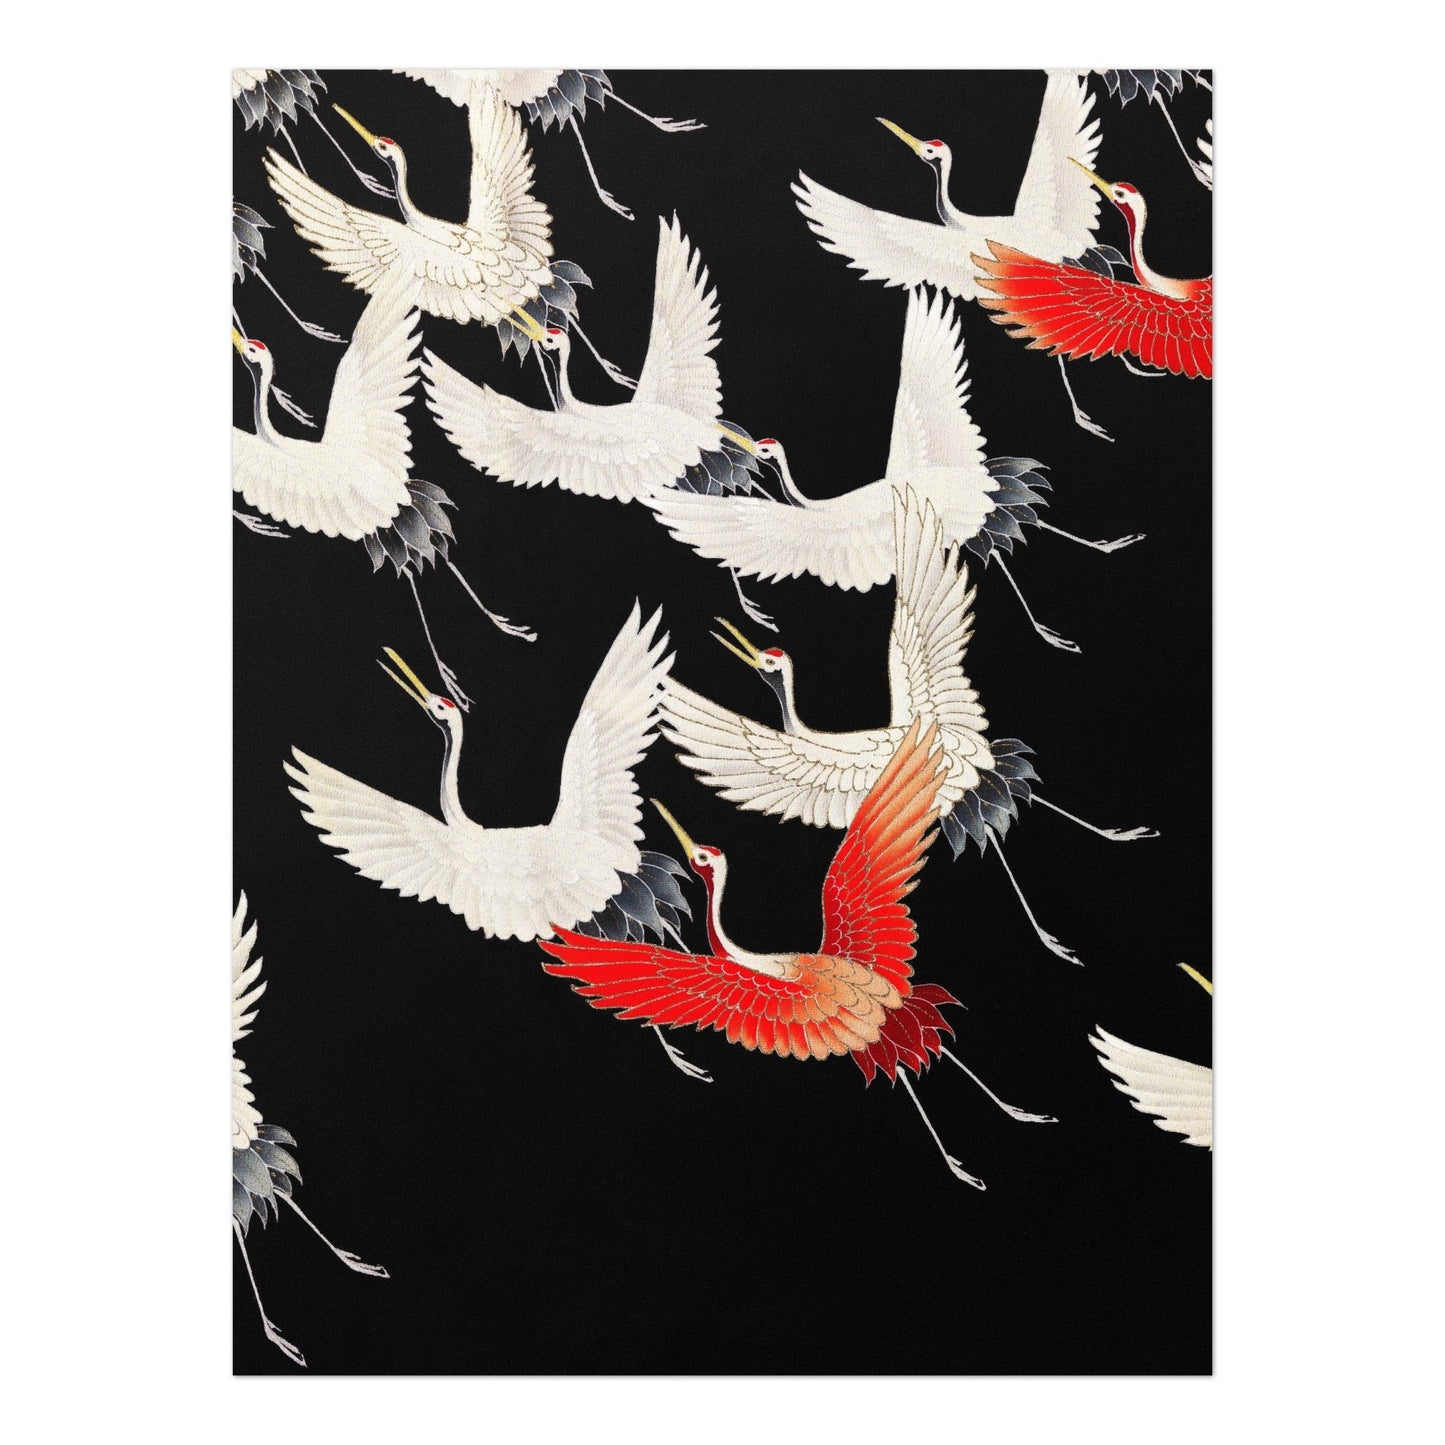 Furisode avec une myriade de grues volantes (art japonais du kimono en soie)